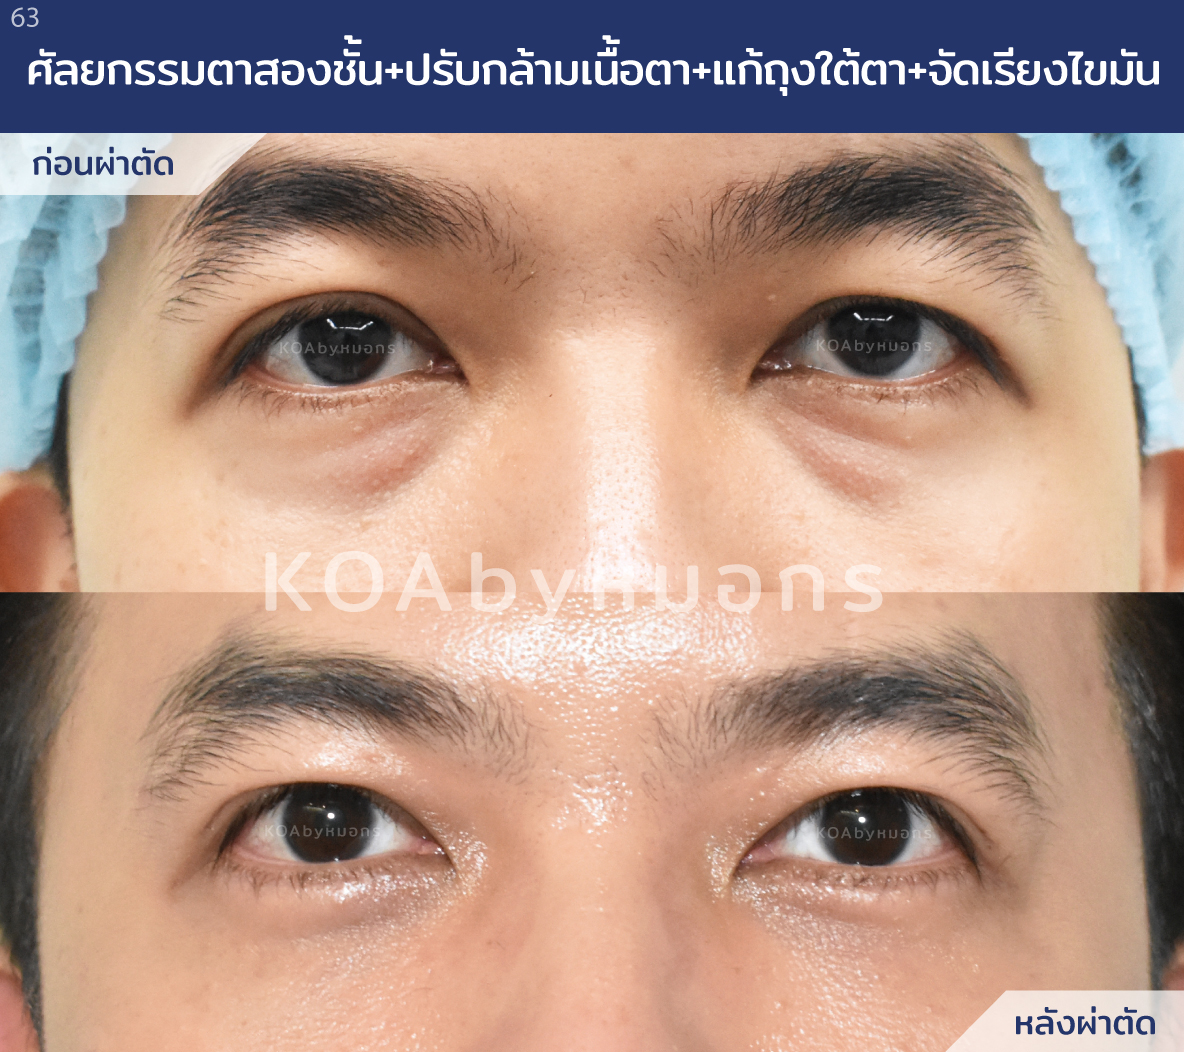 รีวิวศัลยกรรมตาสองชั้น ร่วมกับปรับกล้ามเนื้อตา แก้ถุงใต้ตา ก่อนทำและหลังทำ